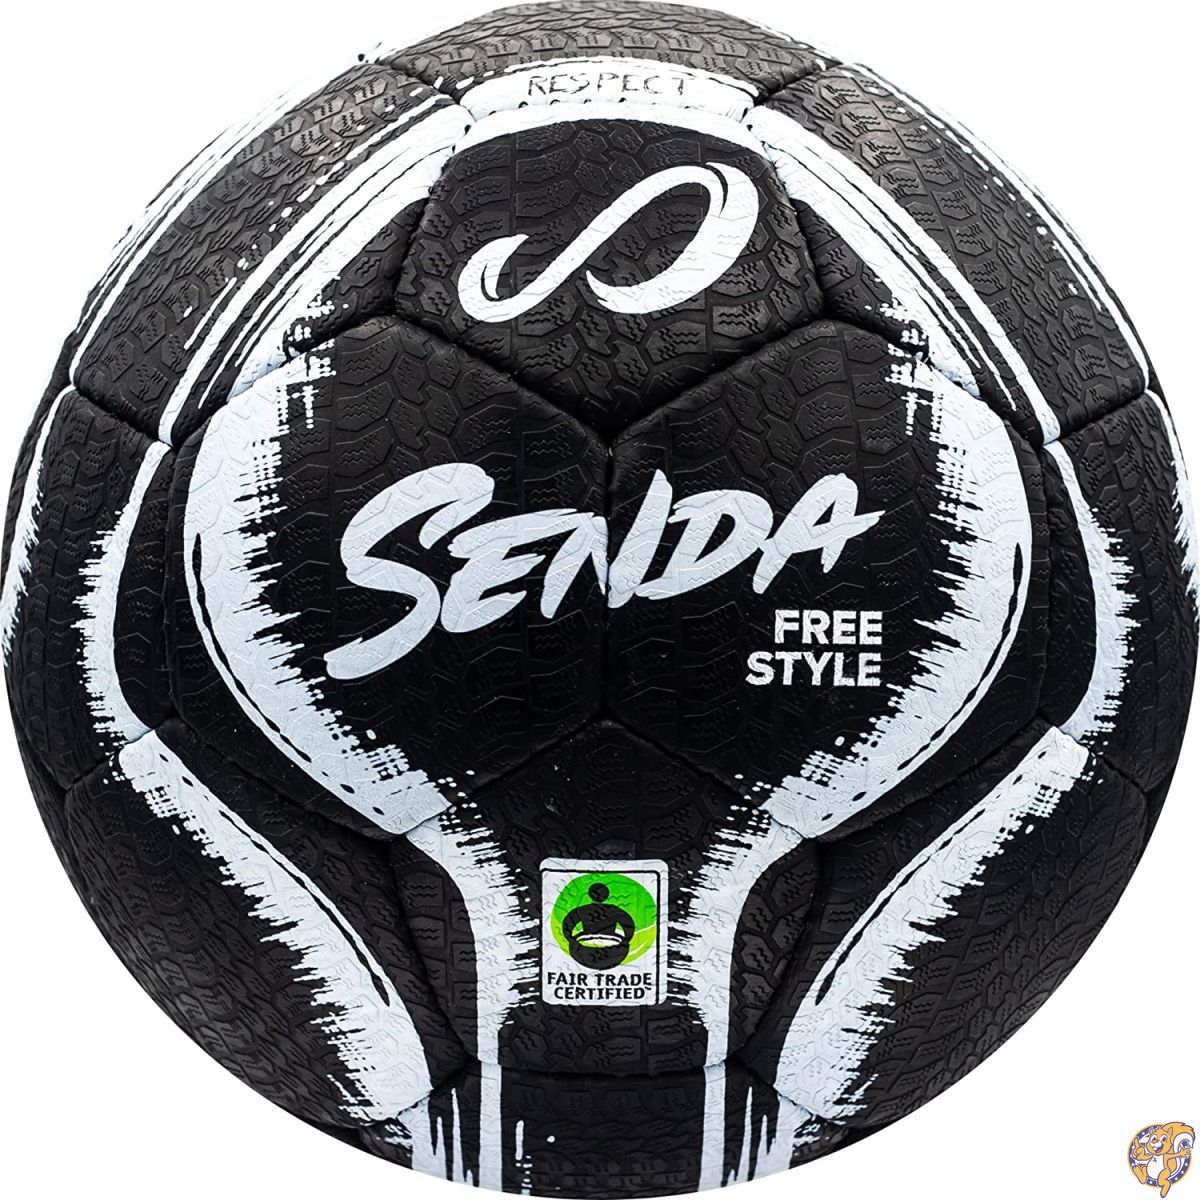 ボール Senda Street Soccer Ball, Fair Trade Certified, Black/White, Size 4 (Ages 送料無料